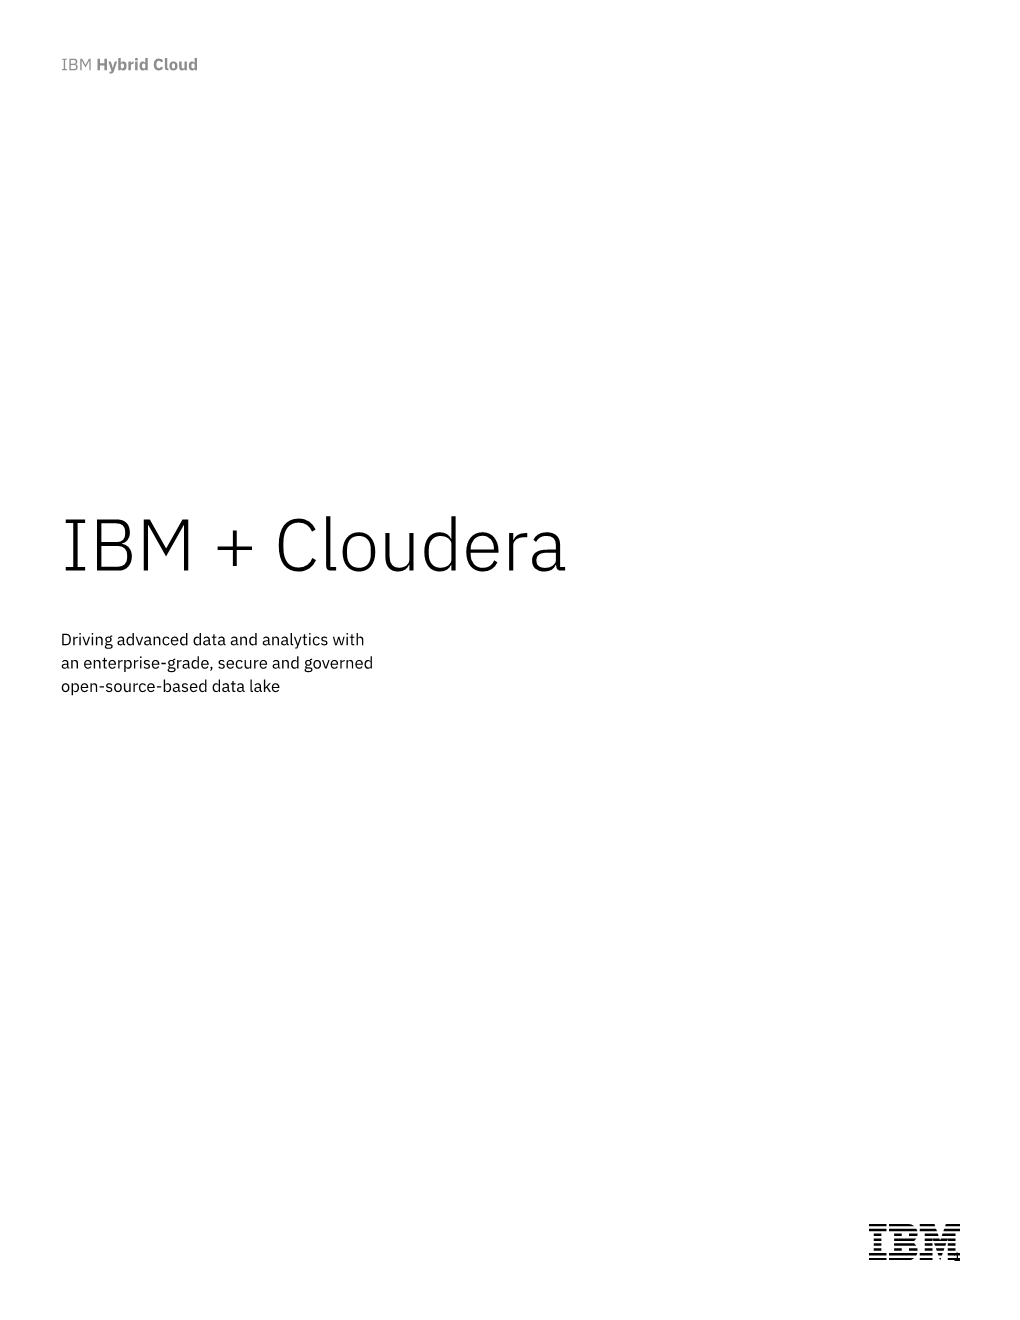 IBM + Cloudera